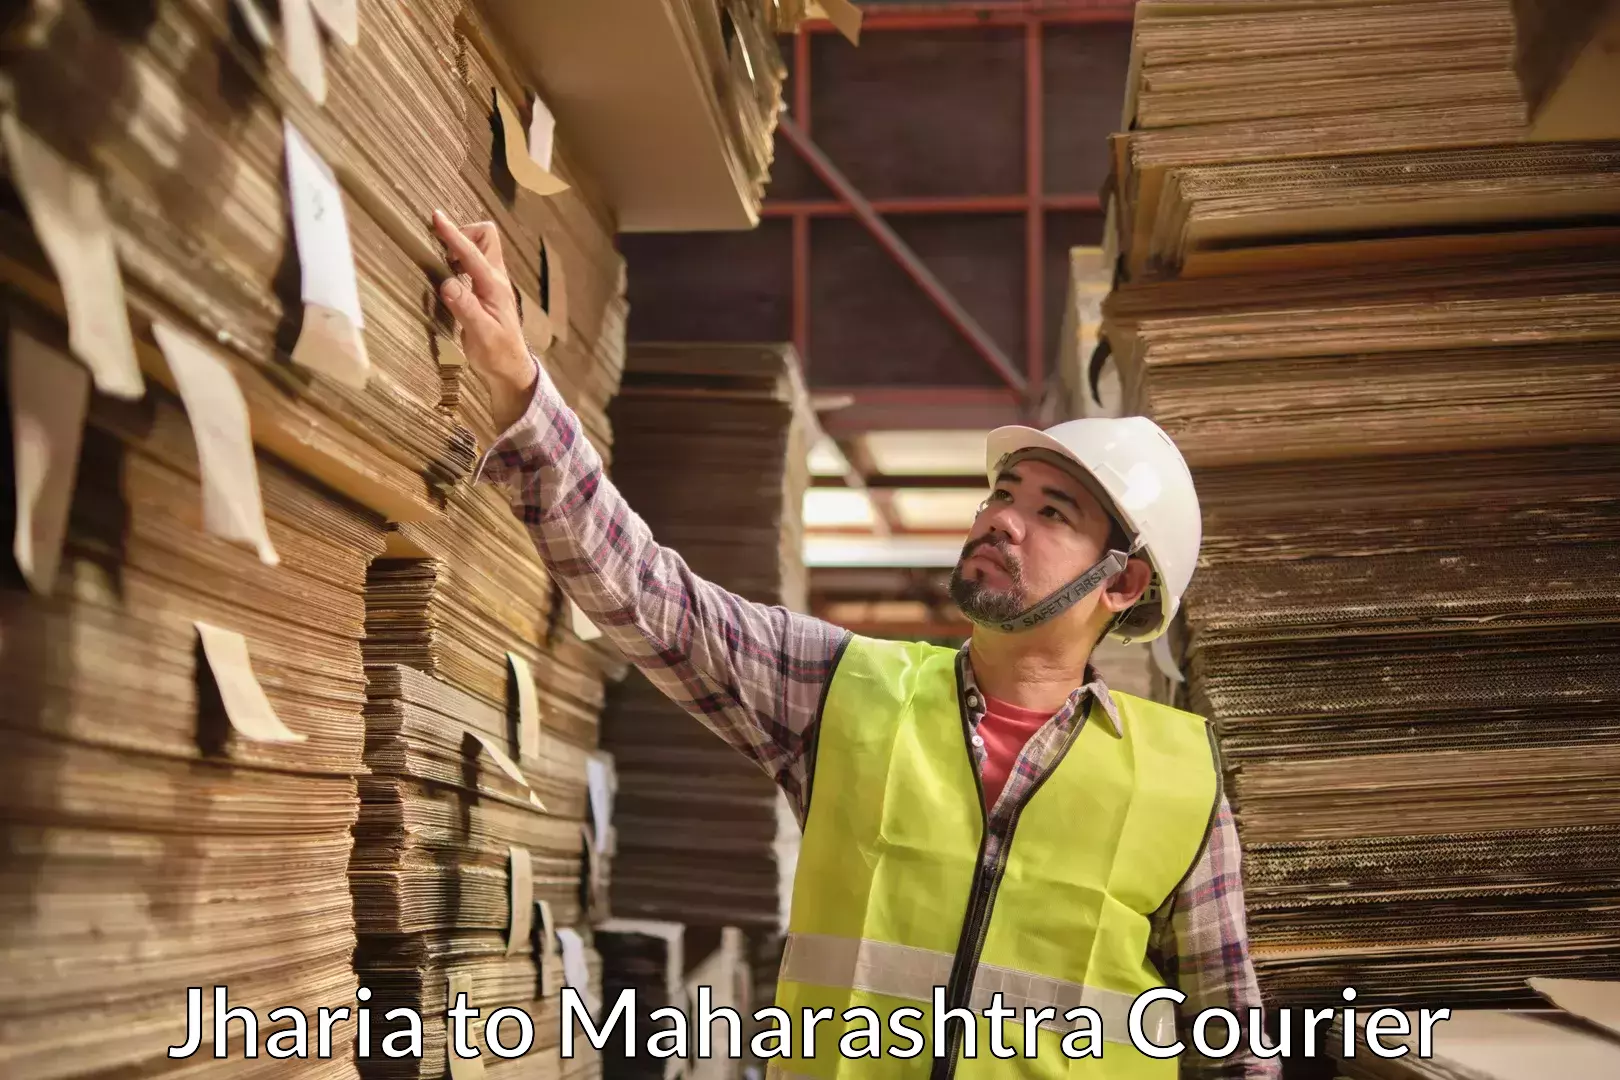 Home moving experts Jharia to Maharashtra